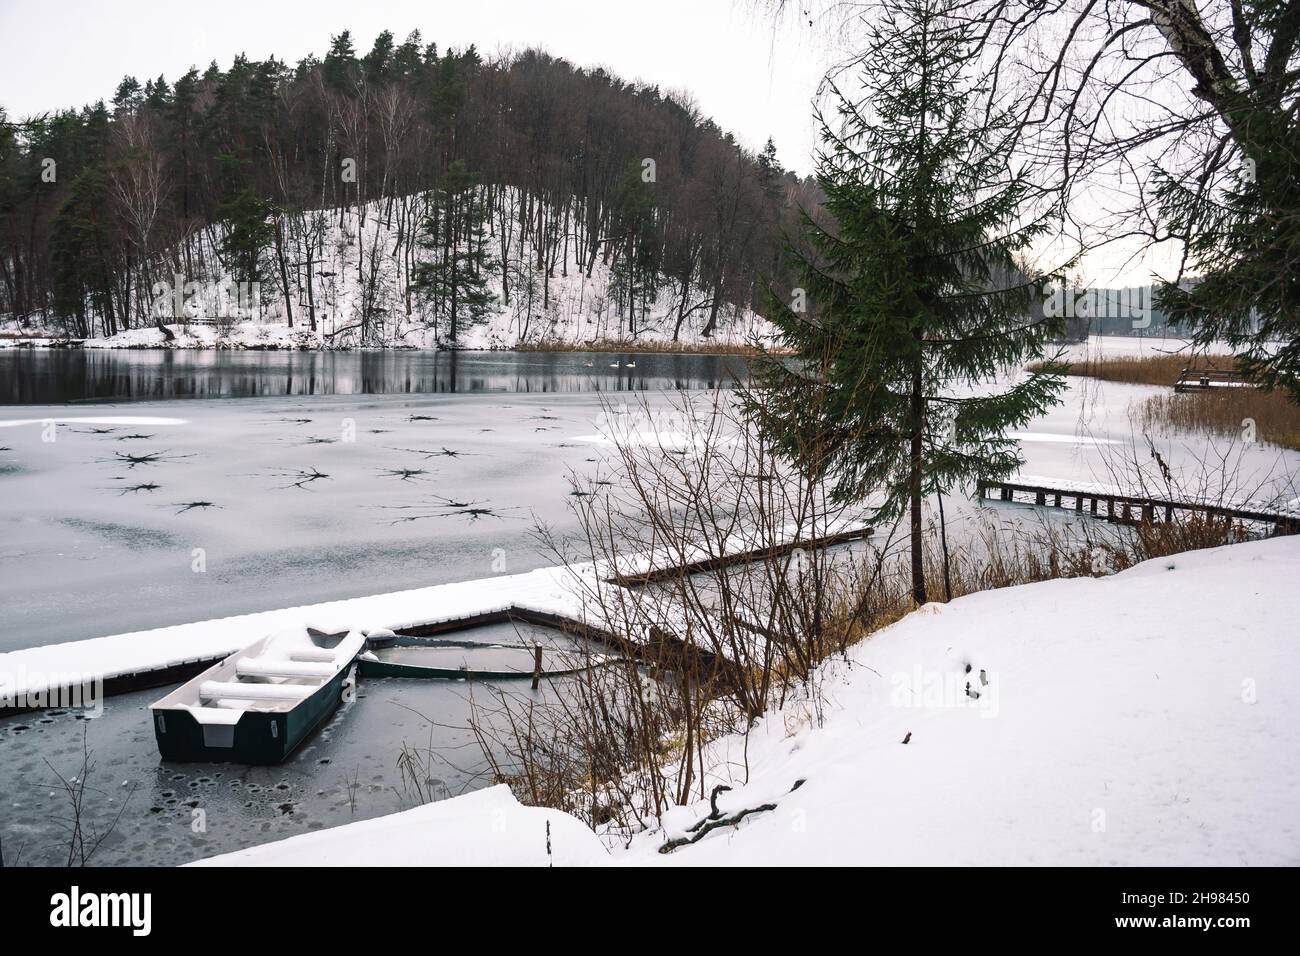 Lac gelé en hiver avec trous, avec jetée, bateaux en bois et sapins couverts de neige, famille de cygnes et forêt en arrière-plan Banque D'Images